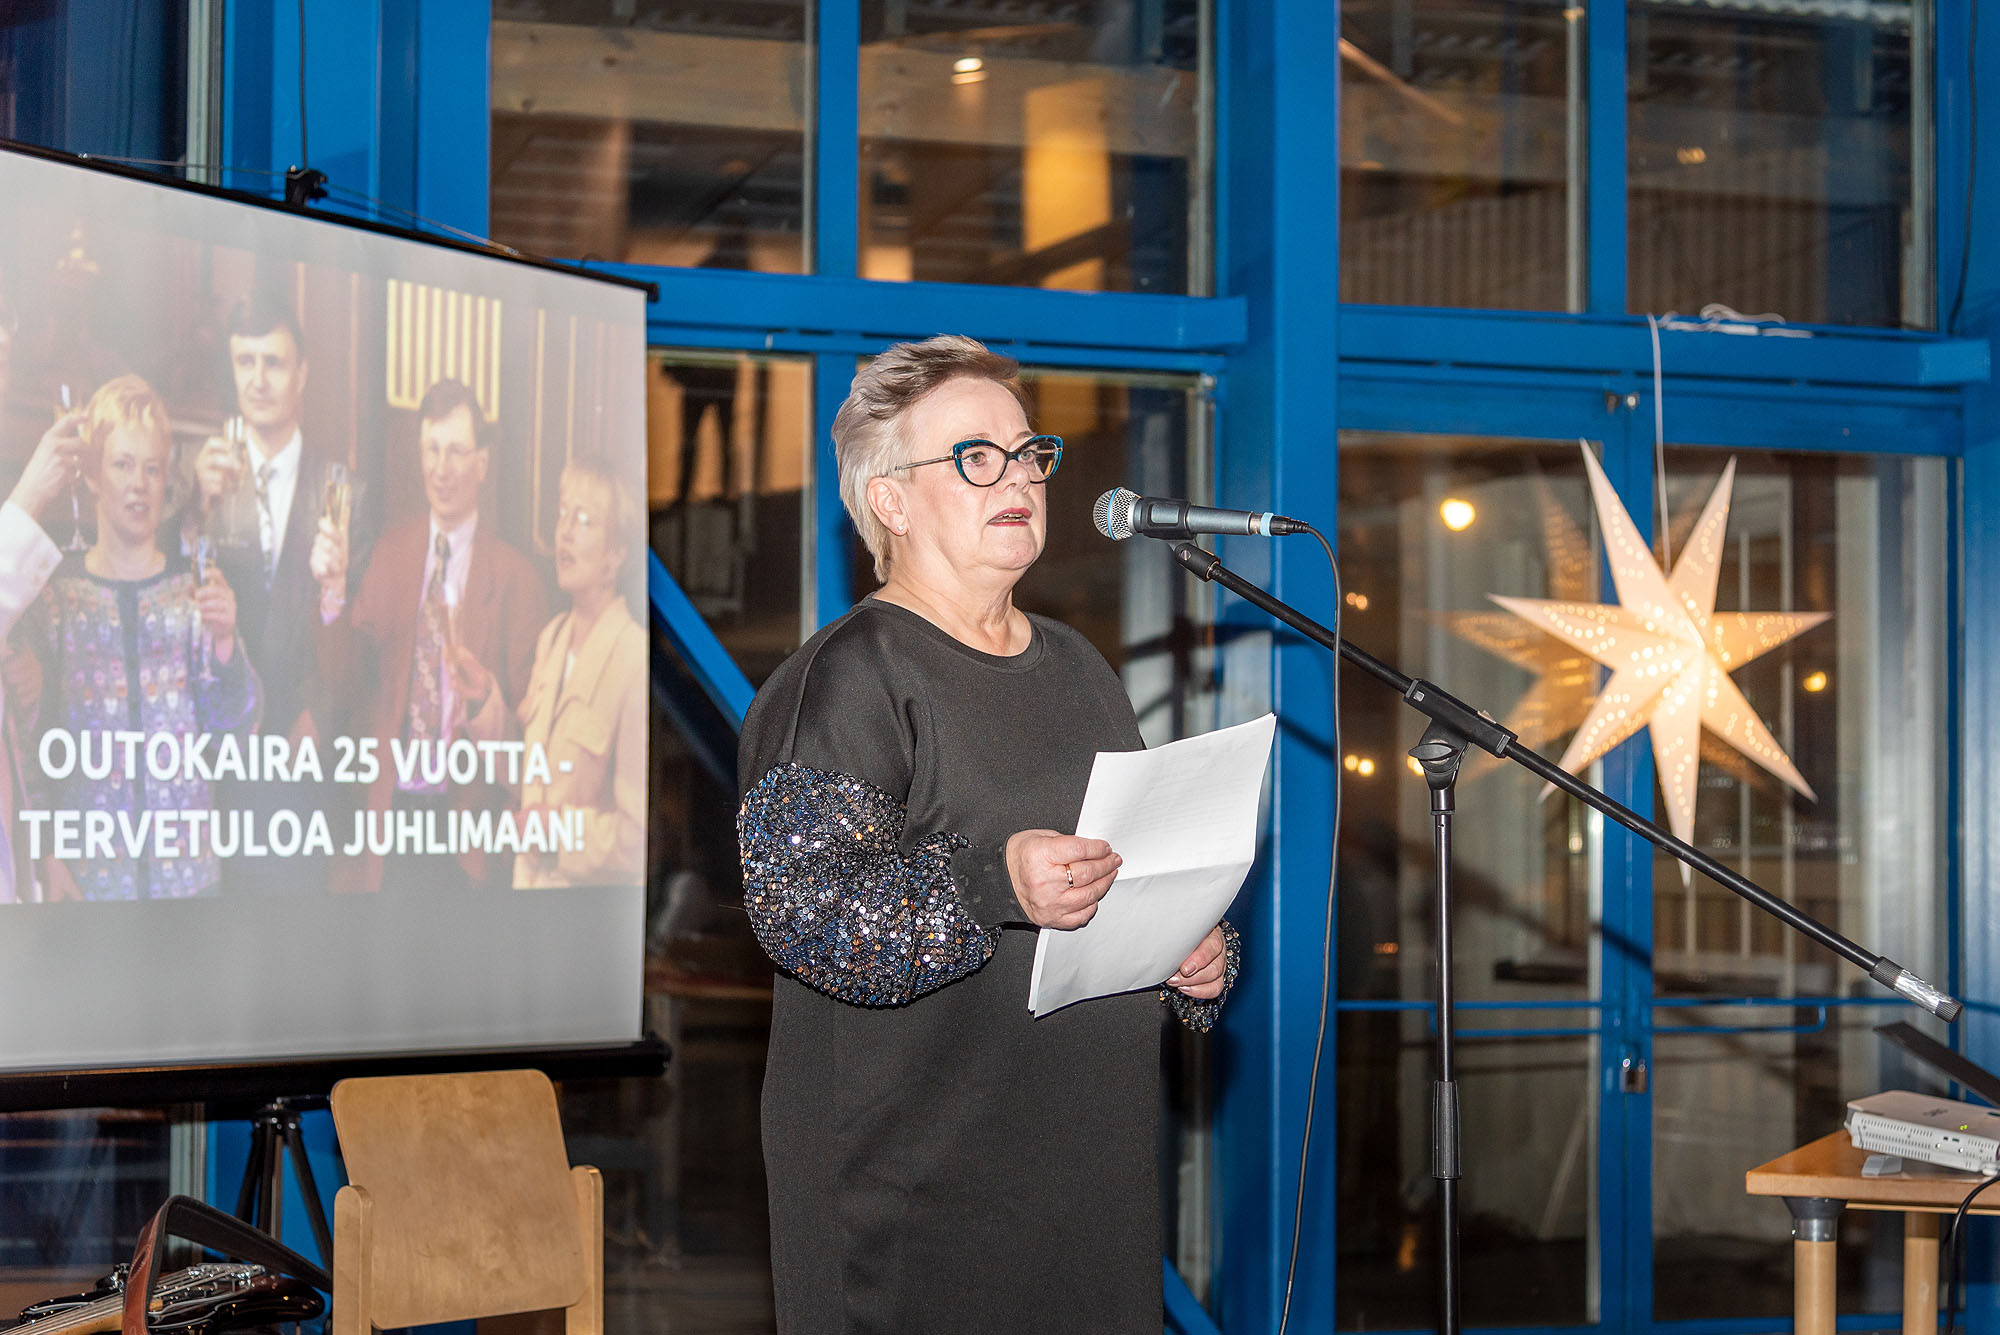 Anne Anttila puhuu juhlassa, taustalla kuva, jossa kilistellään ja lukee Outokaira 25 vuotta - tervetuloa juhlimaan!